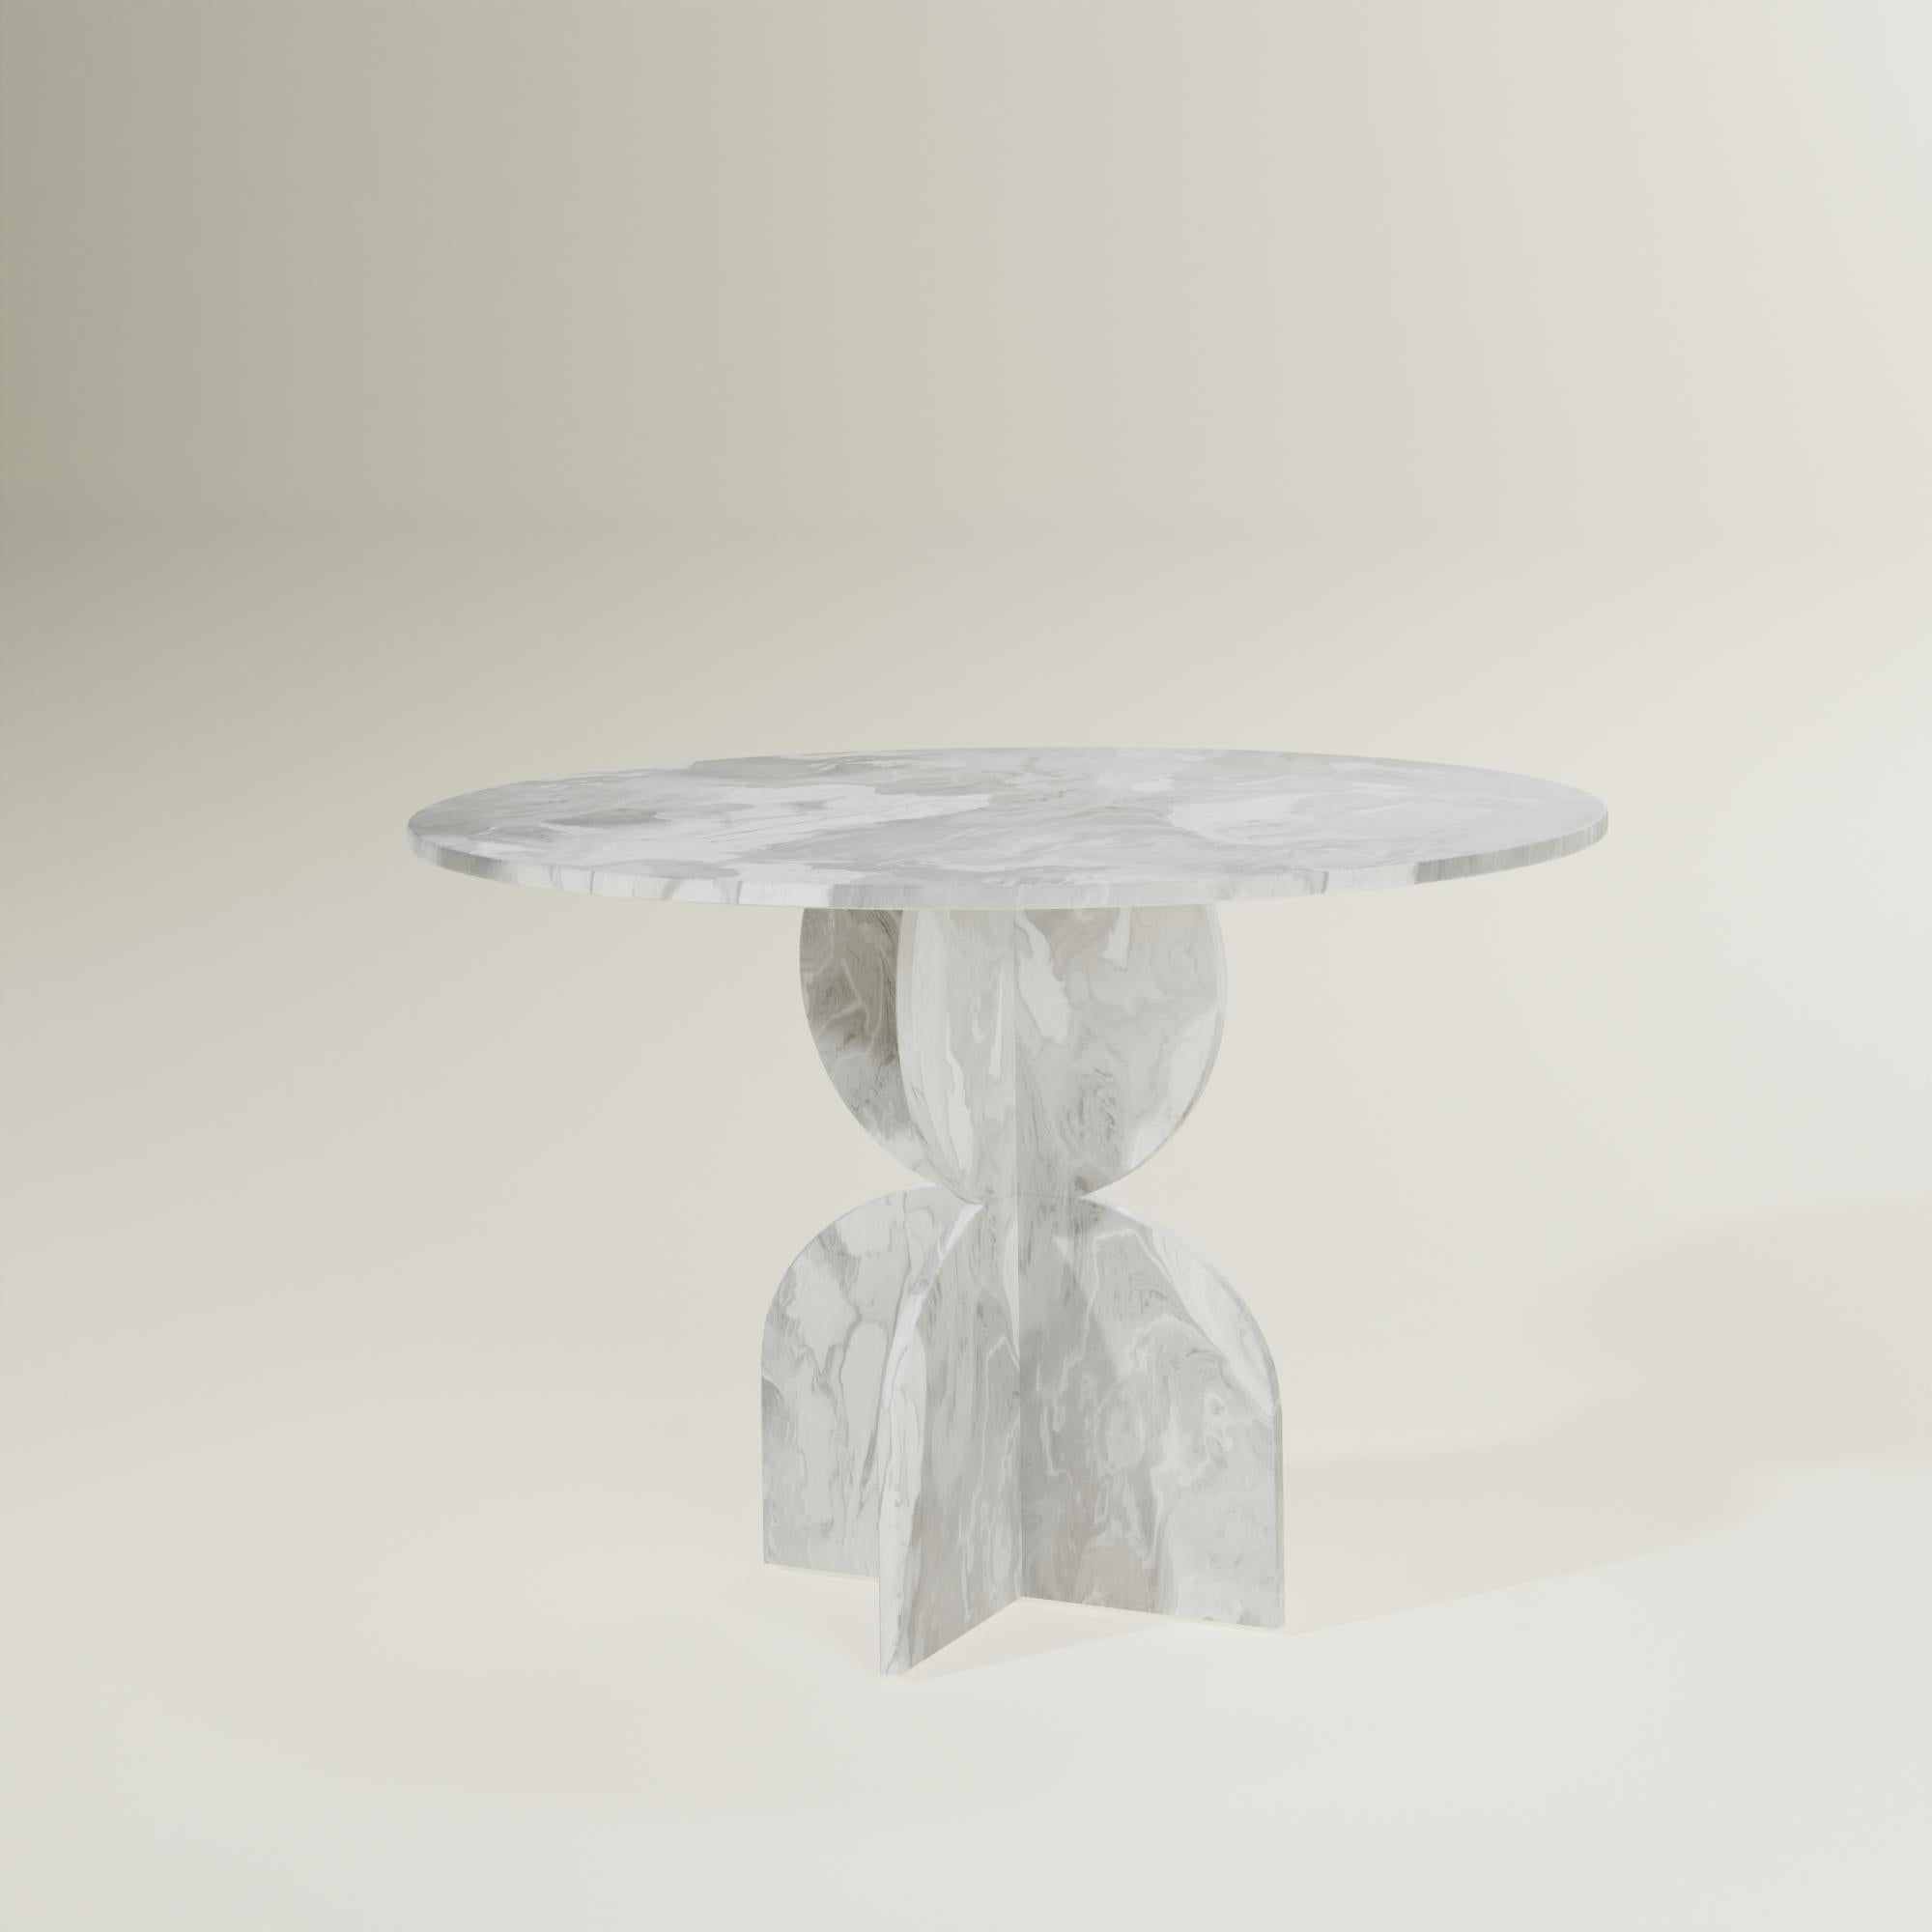 Zeitgenössischer Weißer Grauer Runder Tisch Handgefertigt aus 100% Recyceltem Kunststoff von Anqa Studios
Unglaubliche Gespräche finden an unglaublichen Tischen statt. Der runde Tisch von ANQA Studios ist ein geometrisch geformter Tisch, dessen